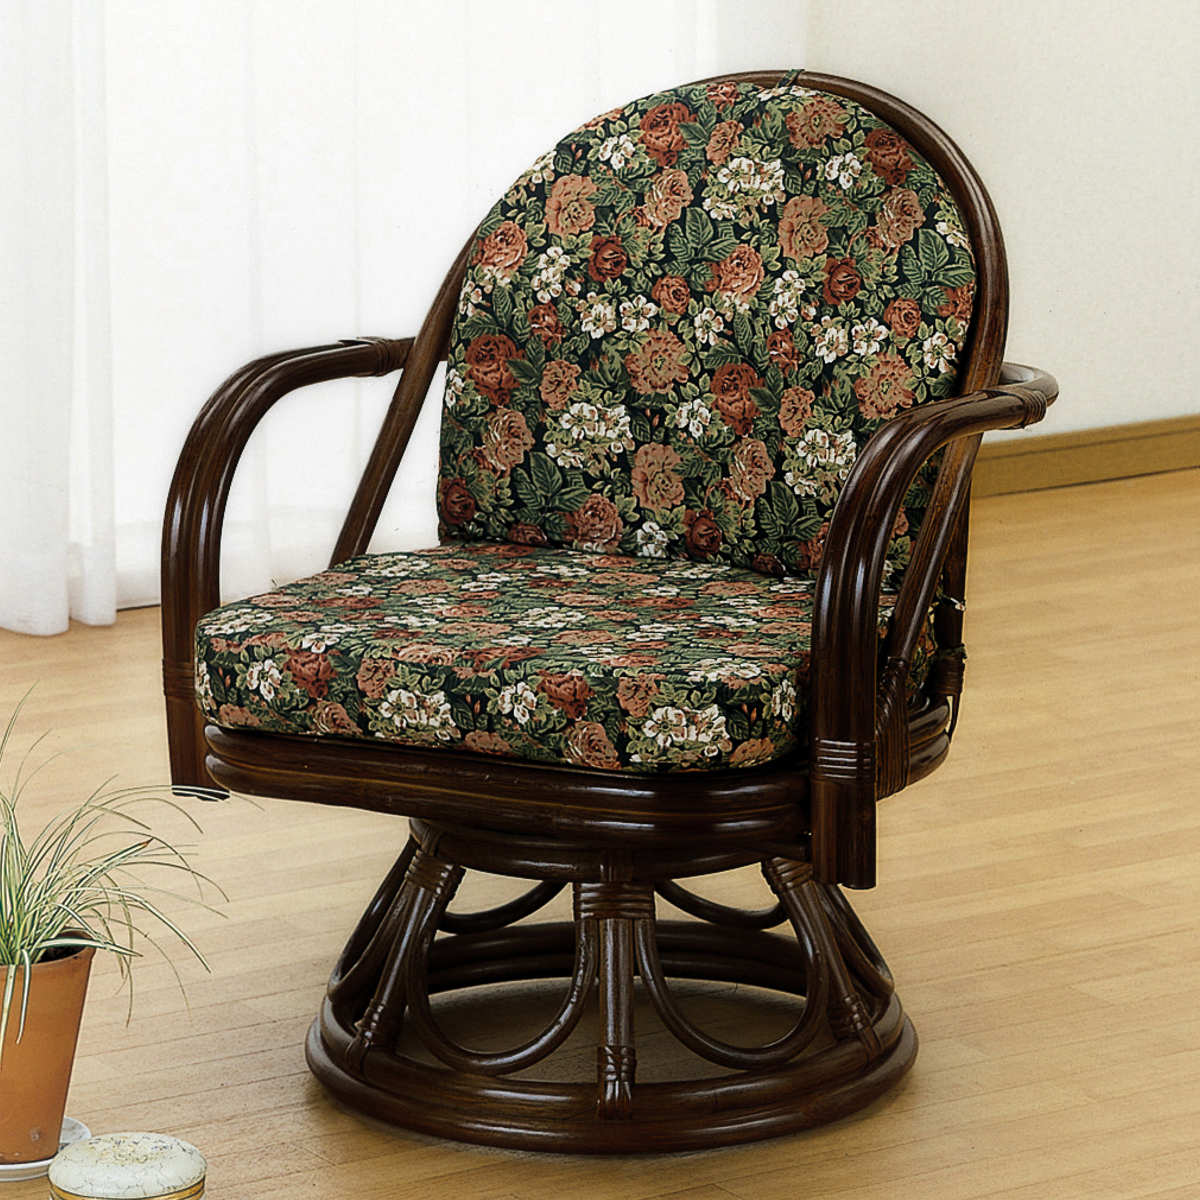 ラタン 椅子 回転式 ローチェア 【予約販売品】 - 座椅子